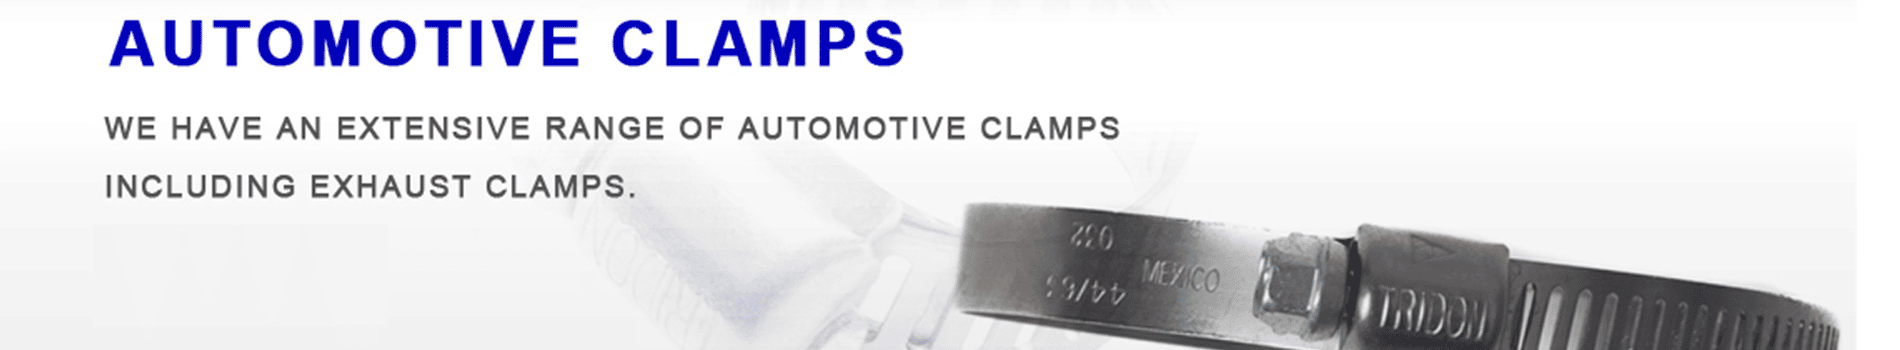 Automotive Clamps